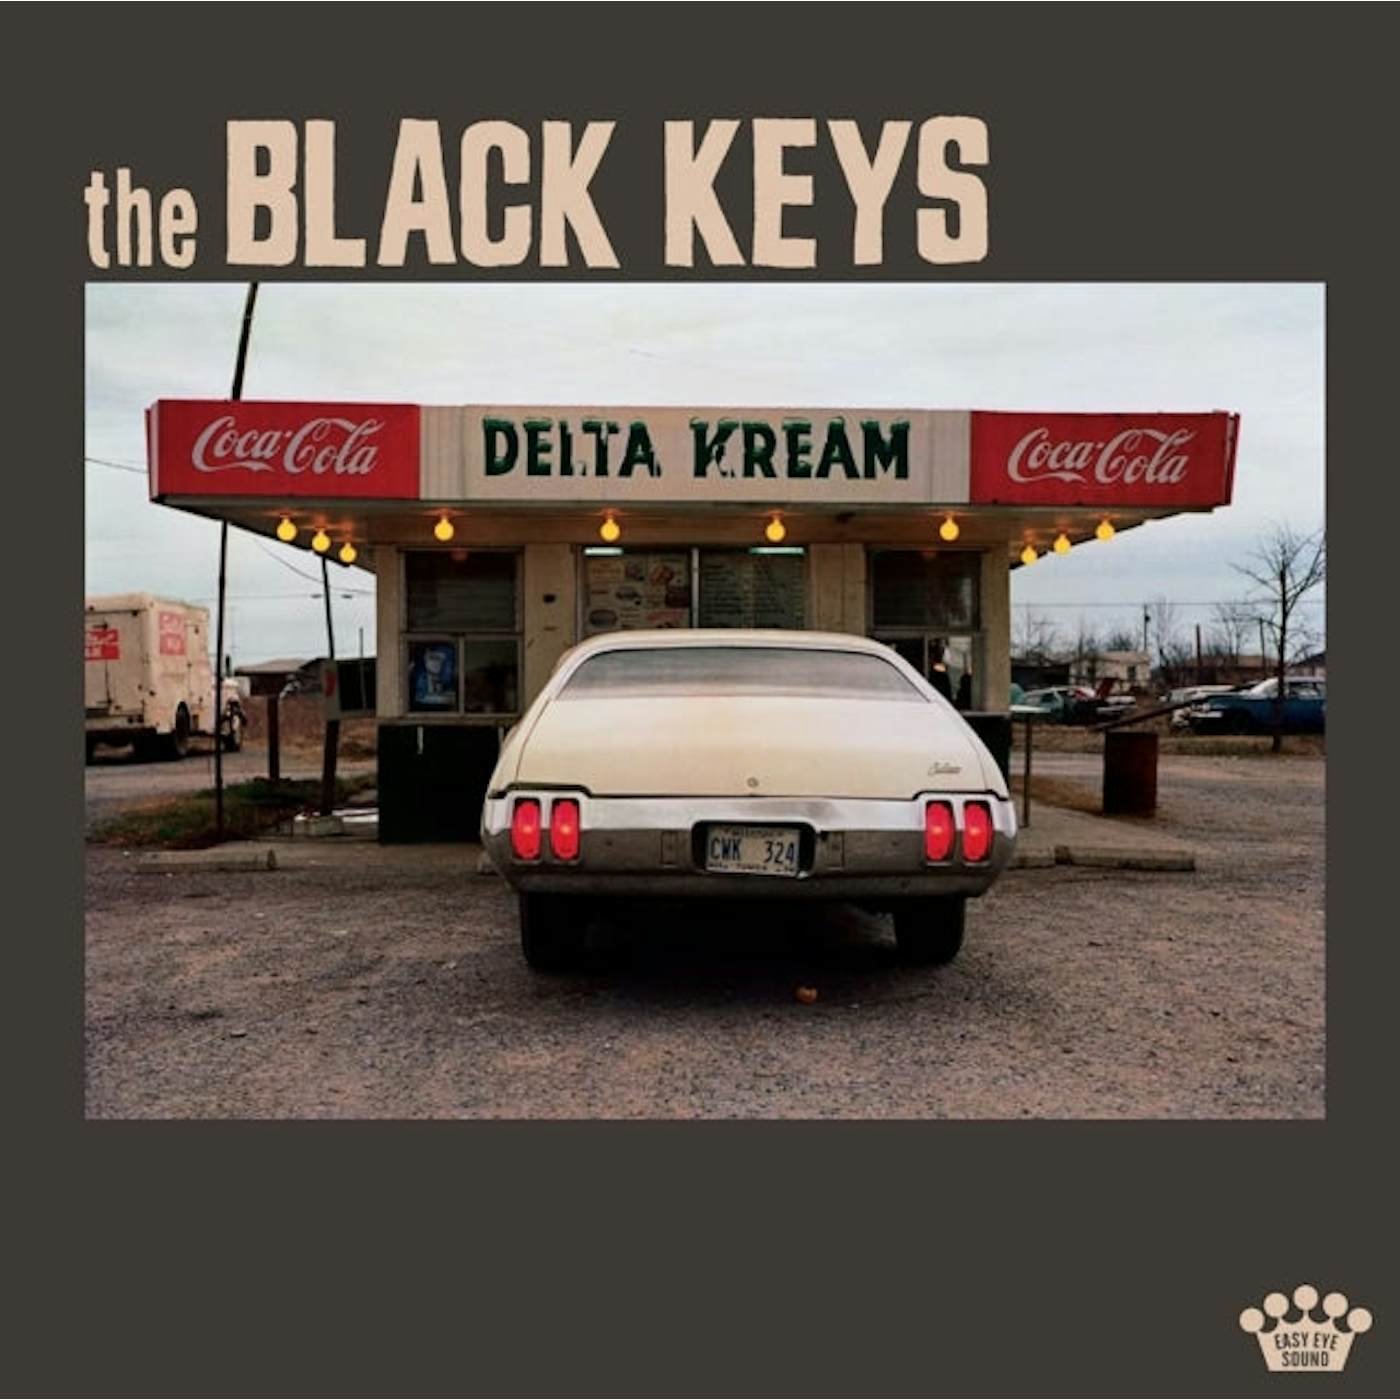 The Black Keys LP Vinyl Record - Delta Kream